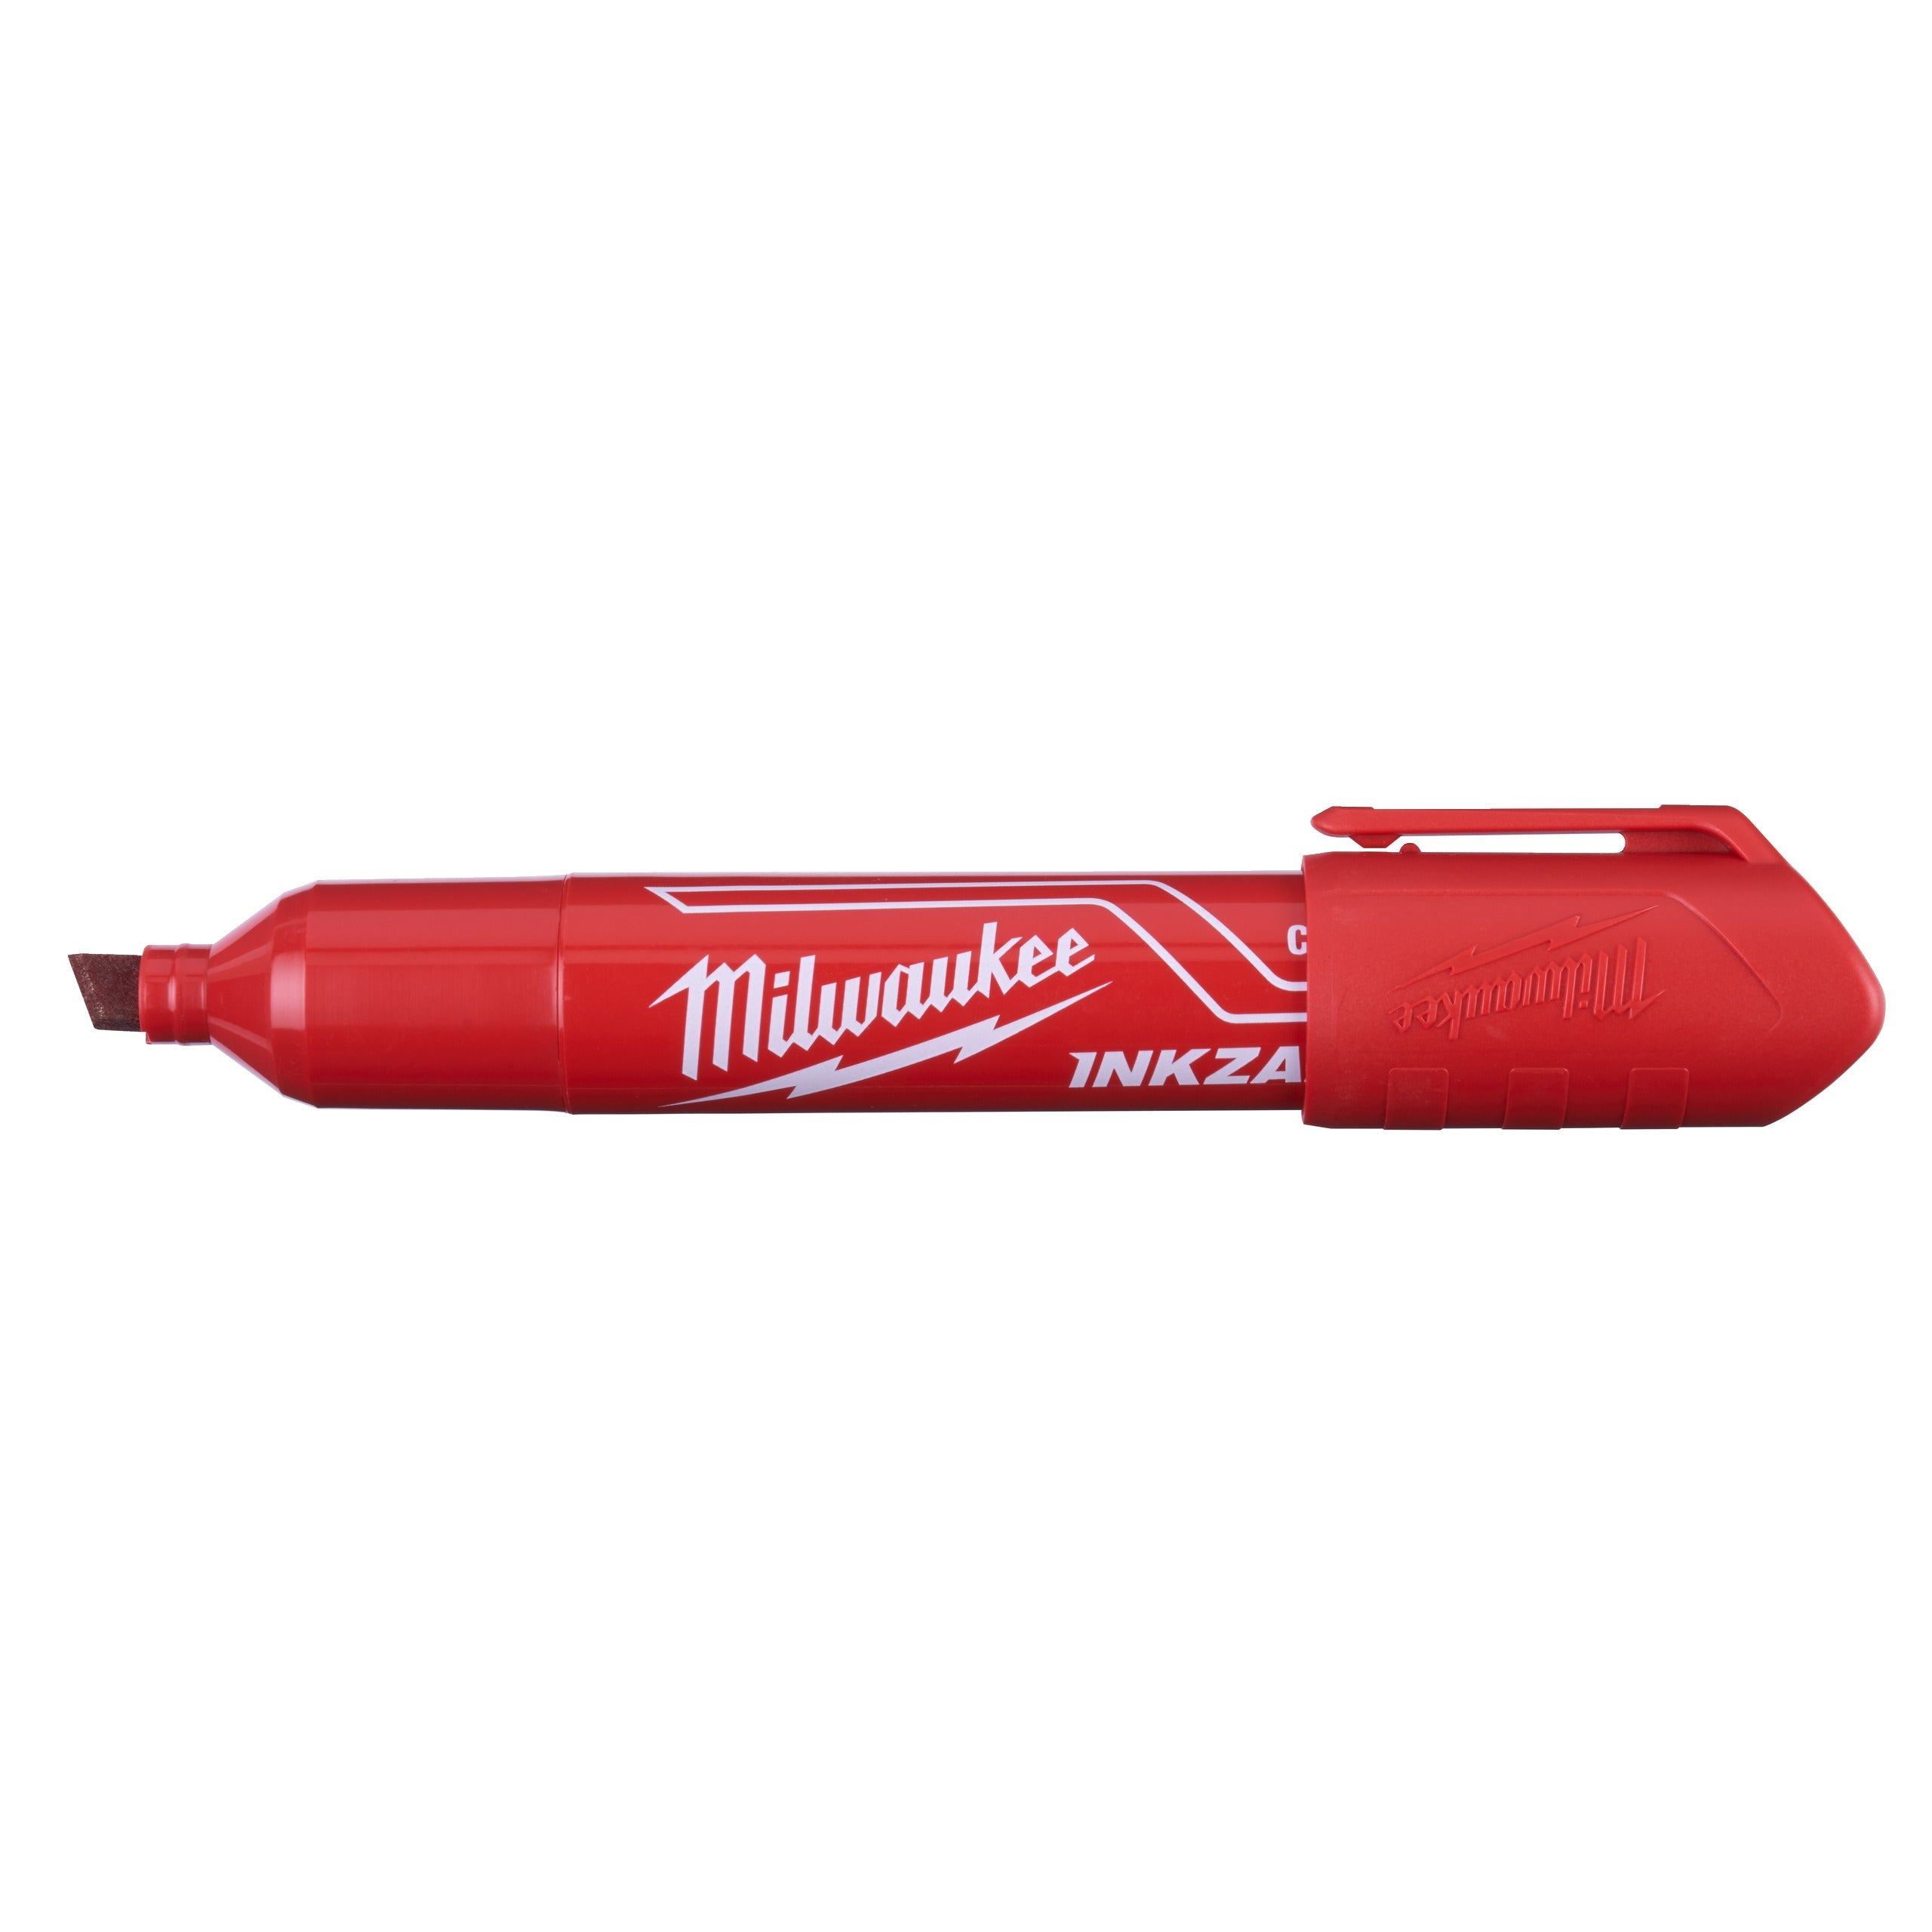 Marker INKZALL™ cu vârf lat Roșu L Milwaukee cod 4932471556